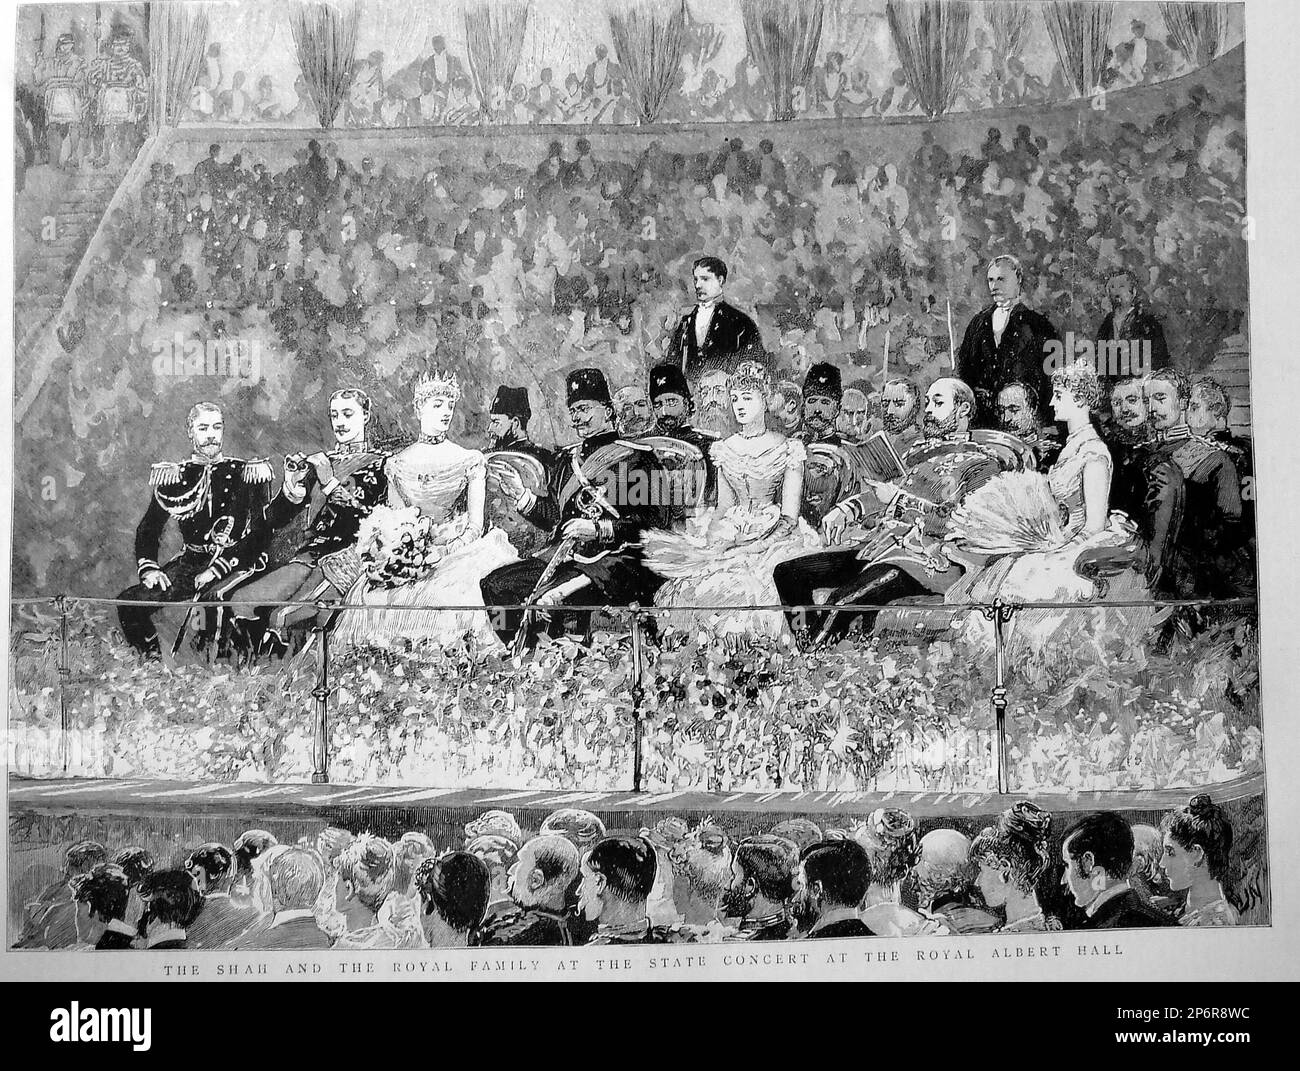 1889 , GROSSBRITANNIEN : der König des Iran NASIR AD-DIN Qajar ( 1831 - 1896 ) war vom 17. September 1848 bis zu seinem Tod am 1. Mai 1896 der Schah von Persien. Er war ein Sohn von Mohammad Shah Qajar. In dieser eingravierten Illustration des Magazins DIE GRAFIK , der Schah , auf seiner Europareise in der Royal Albert Hall, London mit dem Furchtkönig von England EDWARD VII ( Sohn von Königin Victoria ) Und die Königin Alexandra und die königliche britische Familie - PERSIEN - RE - POLITICA - POLITIC - foto Storiche - foto storica - Portrait - Rituto - Baffi - Schnurrbart - Hut - cappello - Piume - Federn Stockfoto